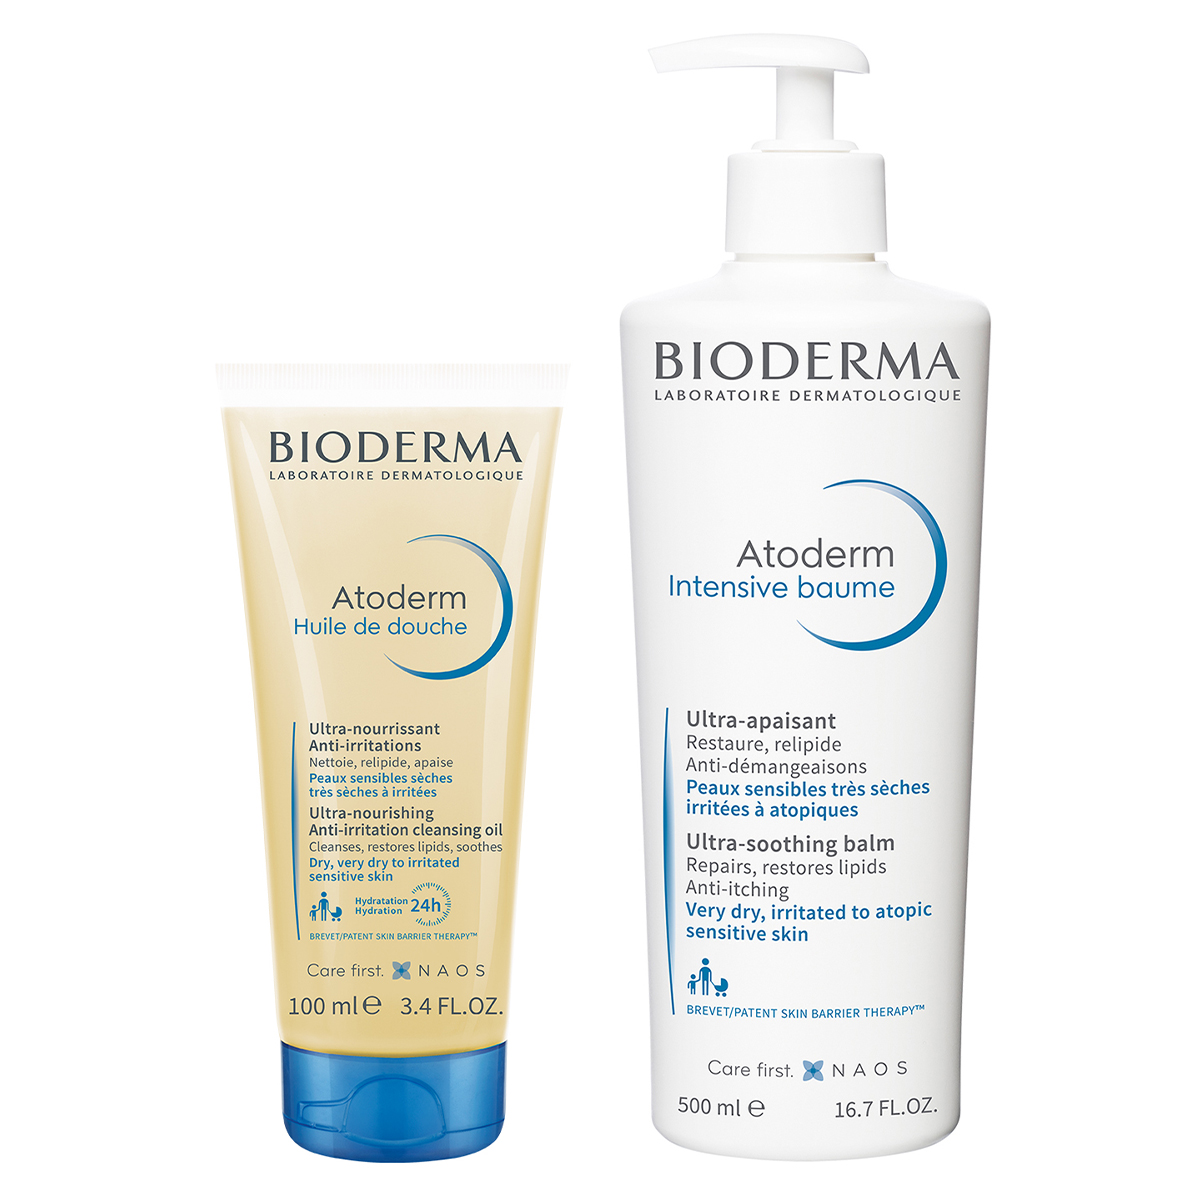 бальзам для тела bioderma бальзам для восстановления сухой и атопичной кожи лица и тела atoderm Bioderma Набор средств для сухой, чувствительной, атопичной кожи (Bioderma, Atoderm)